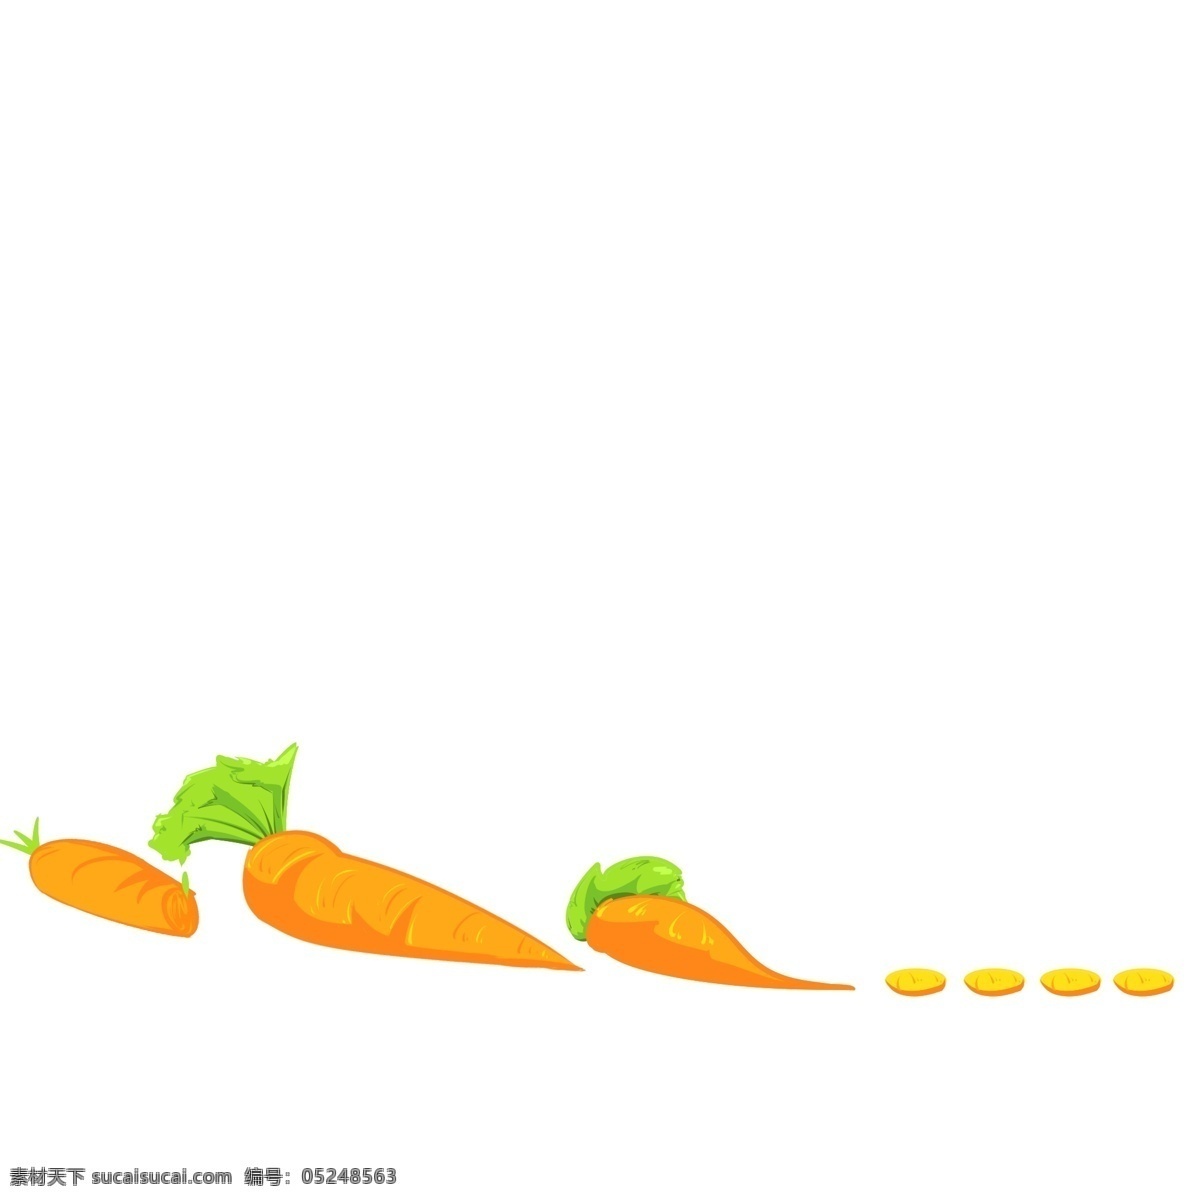 胡萝卜 分割线 插画 黄色的分割线 胡萝卜分割线 蔬菜分割线 食物分割线 创意分割线 分割线插画